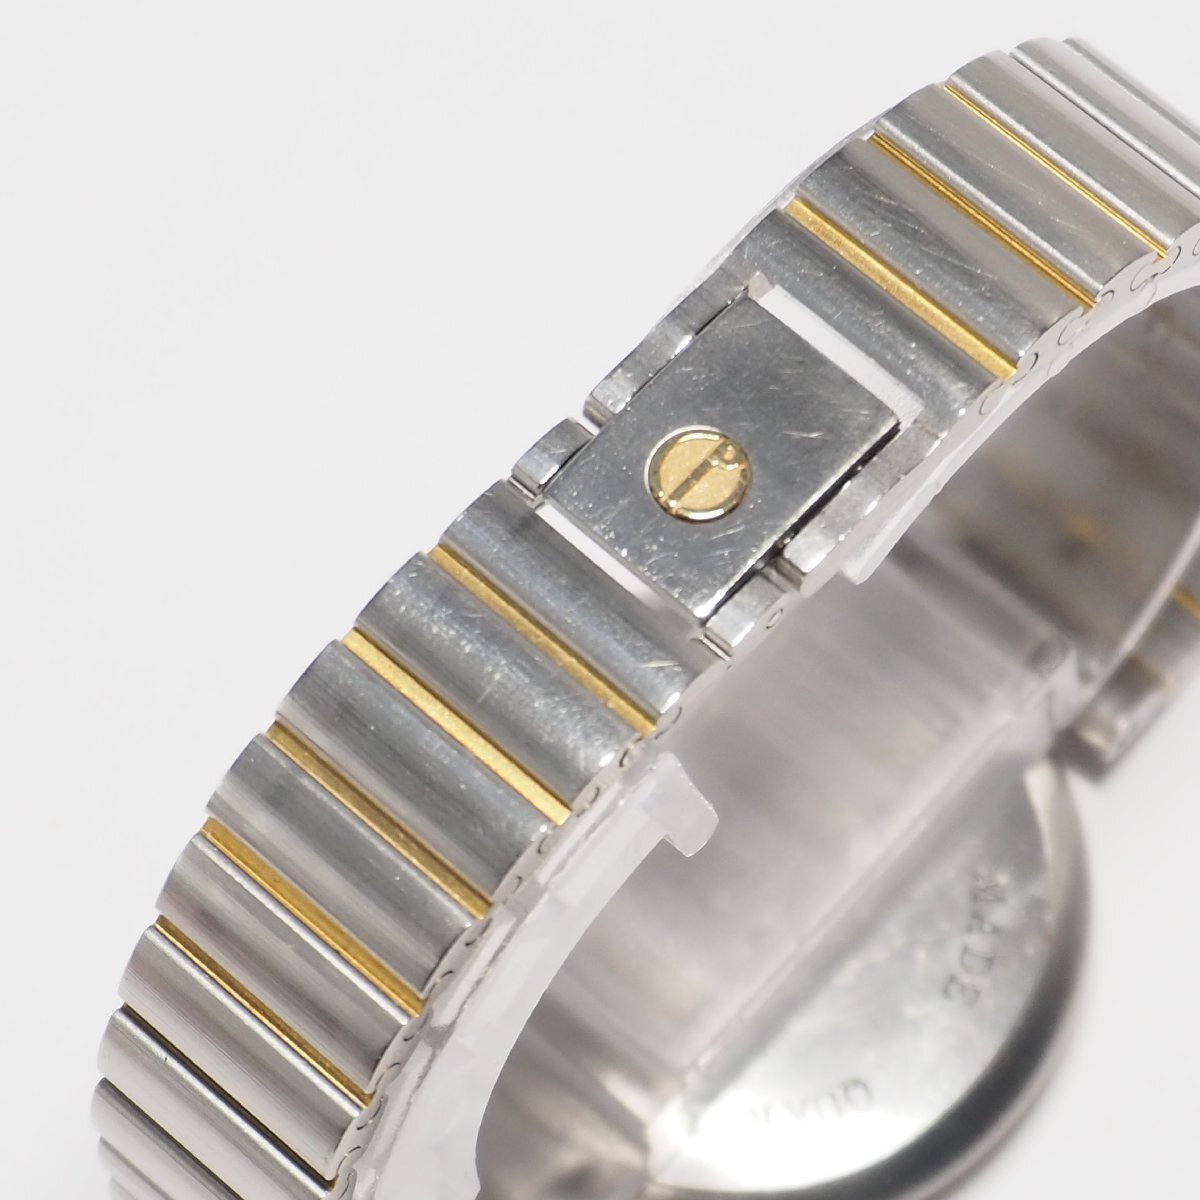  Dunhill Dunhill 12P diamond мужской кварц наручные часы Gold + серебряный комбинированный C371 б/у 